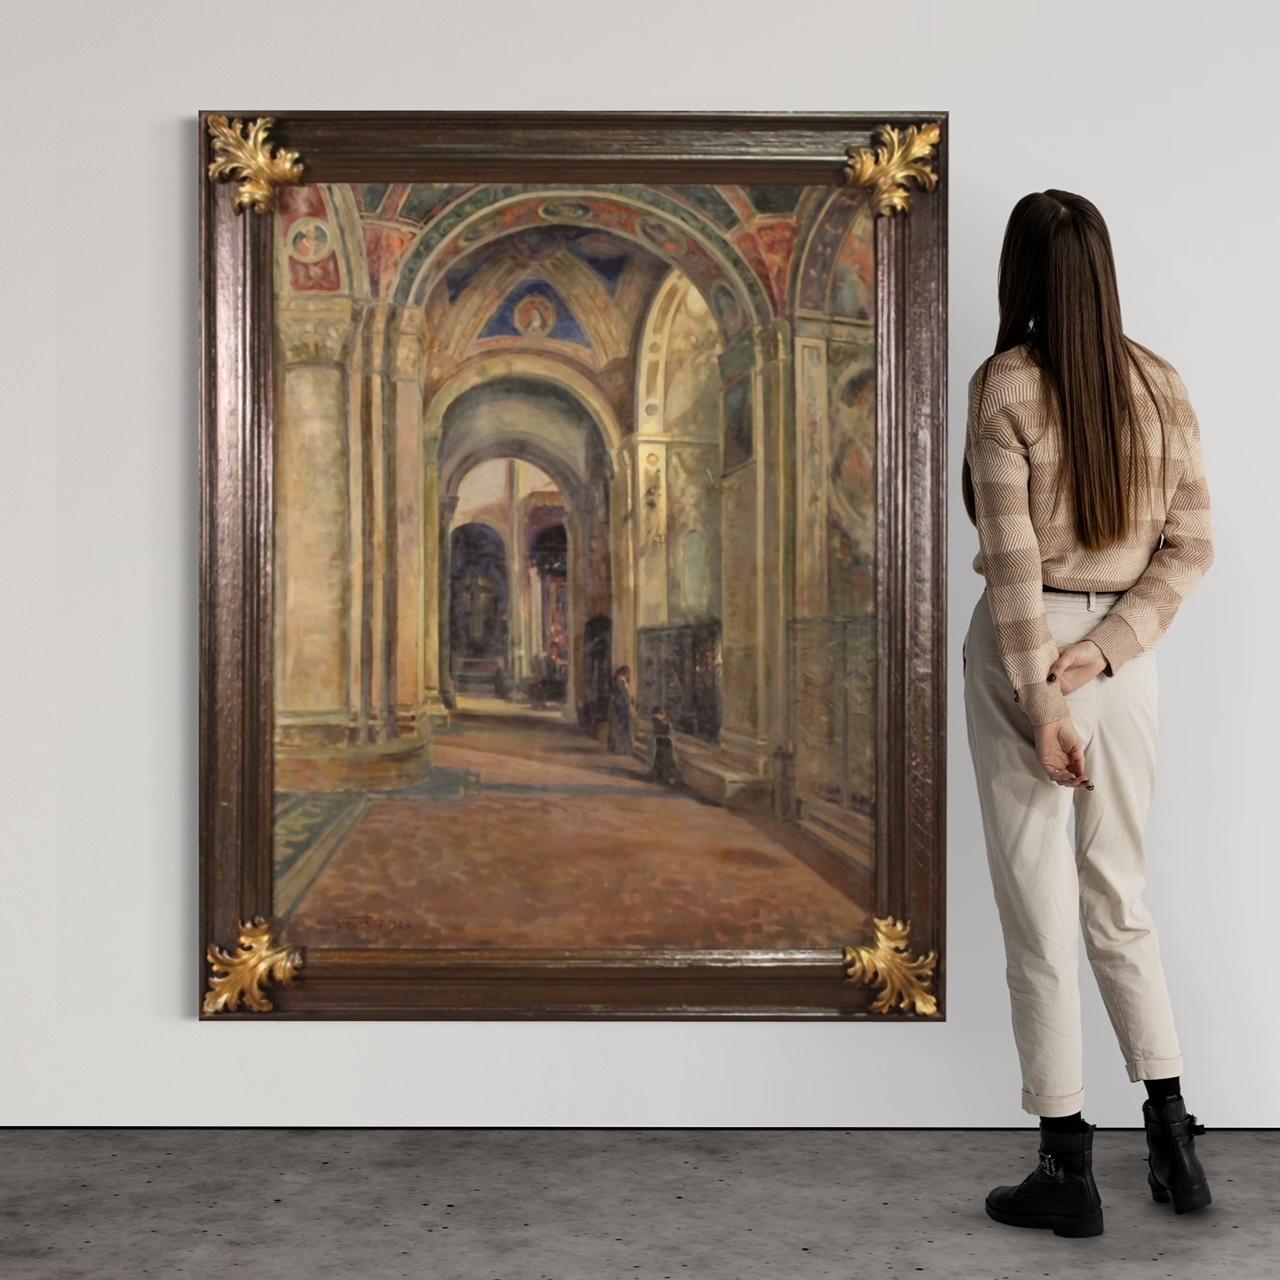 Peinture italienne datée de juillet 1924. Huile sur toile de style impressionniste intitulée Solitude, Vue intérieure avec personnages de la Basilique de San Michele à Pavie, de bonne qualité picturale. Peinture de grande taille et de grand impact,